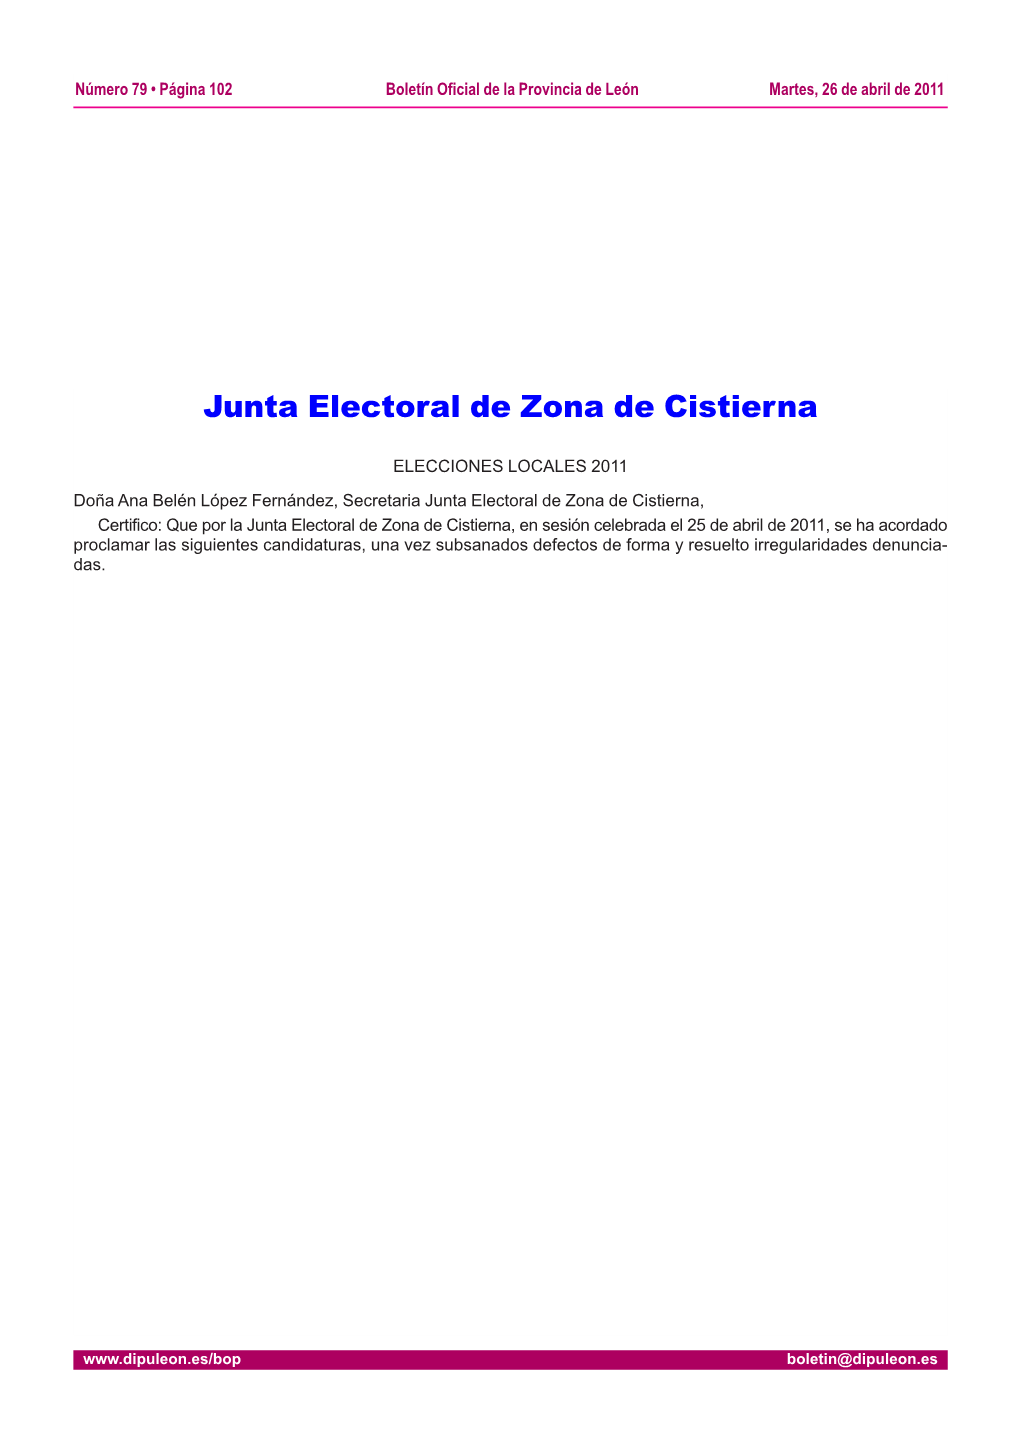 Junta Electoral De Zona De Cistierna